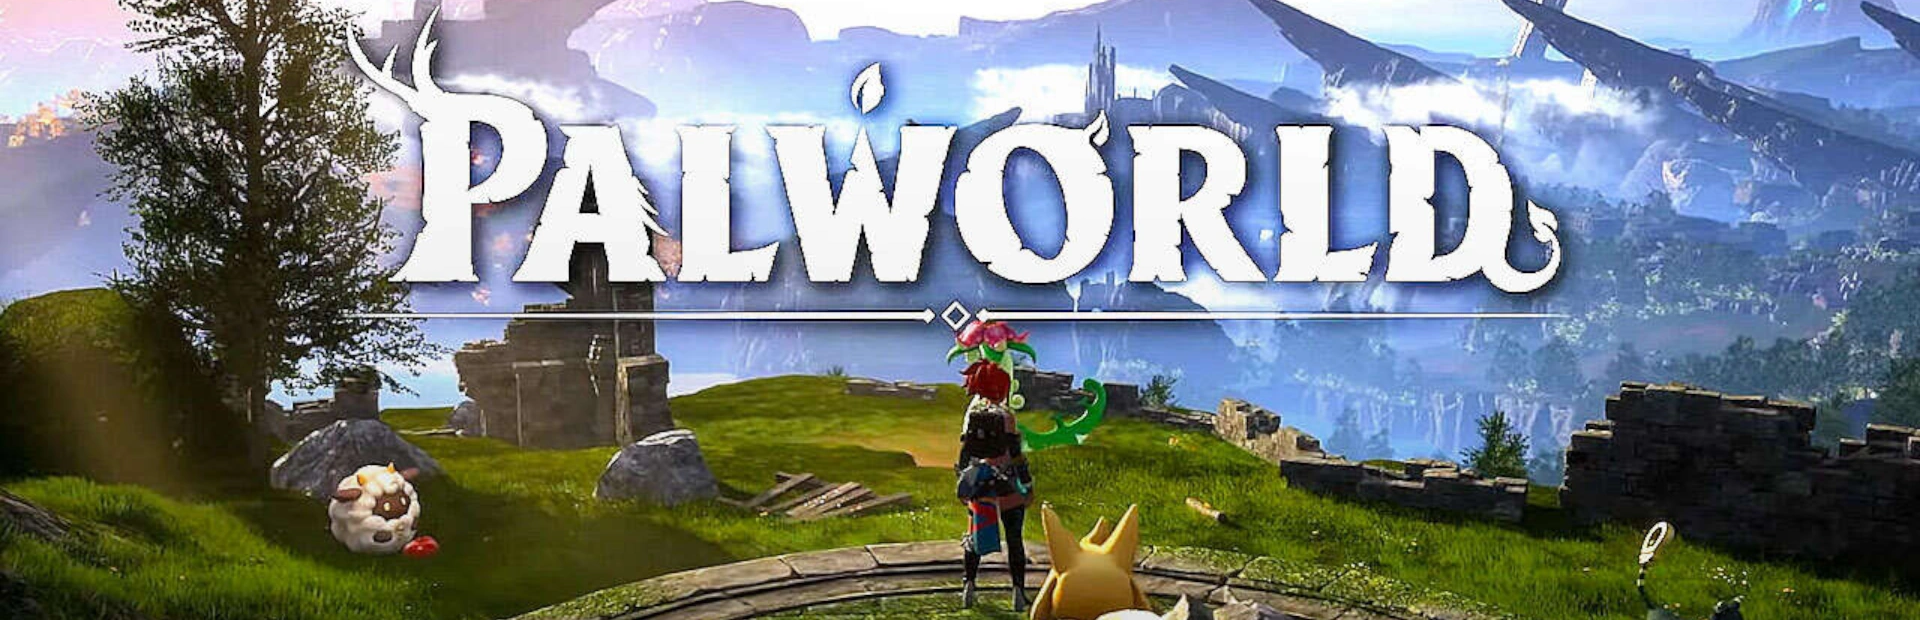 دانلود بازی Palworld برای کامپیوتر | گیمباتو